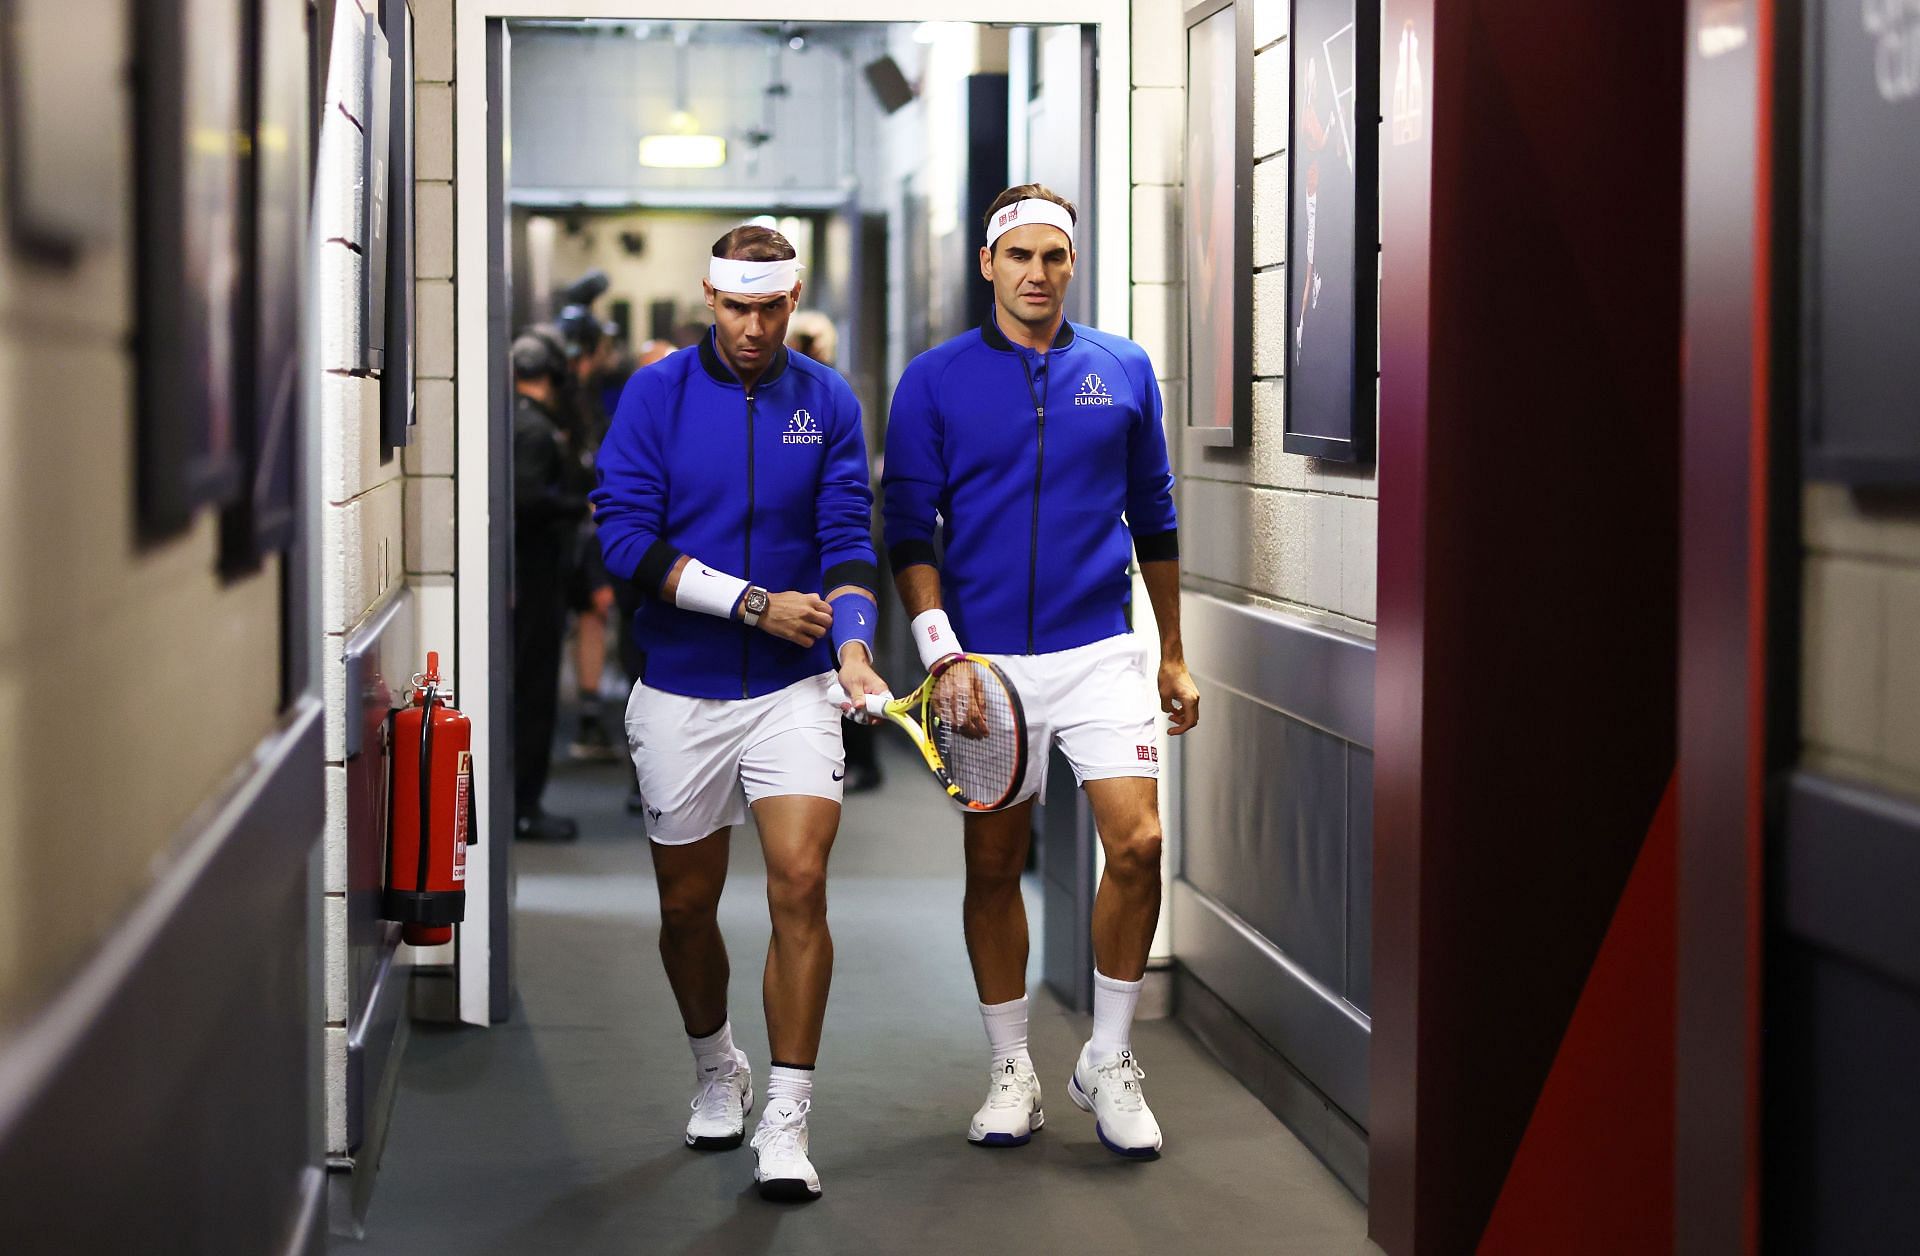 Rafael Nadal (L) and Roger Federer